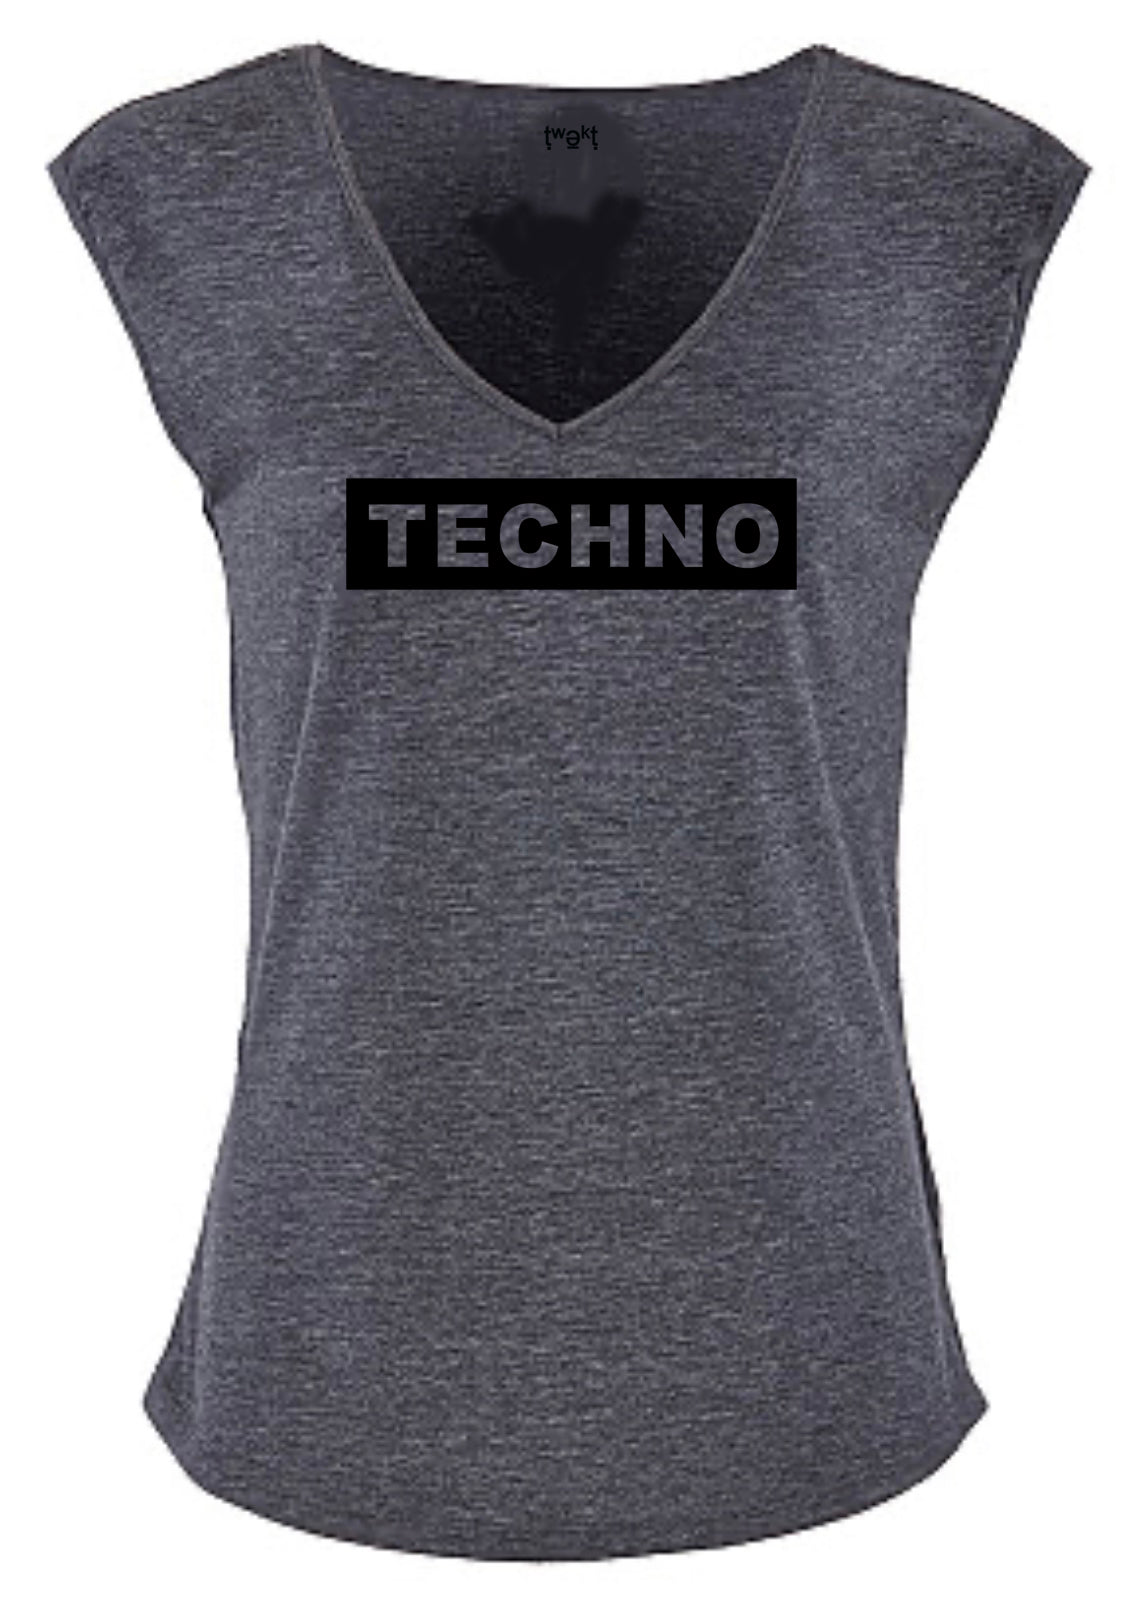 Techno Badge Women Sleeveless V-neck